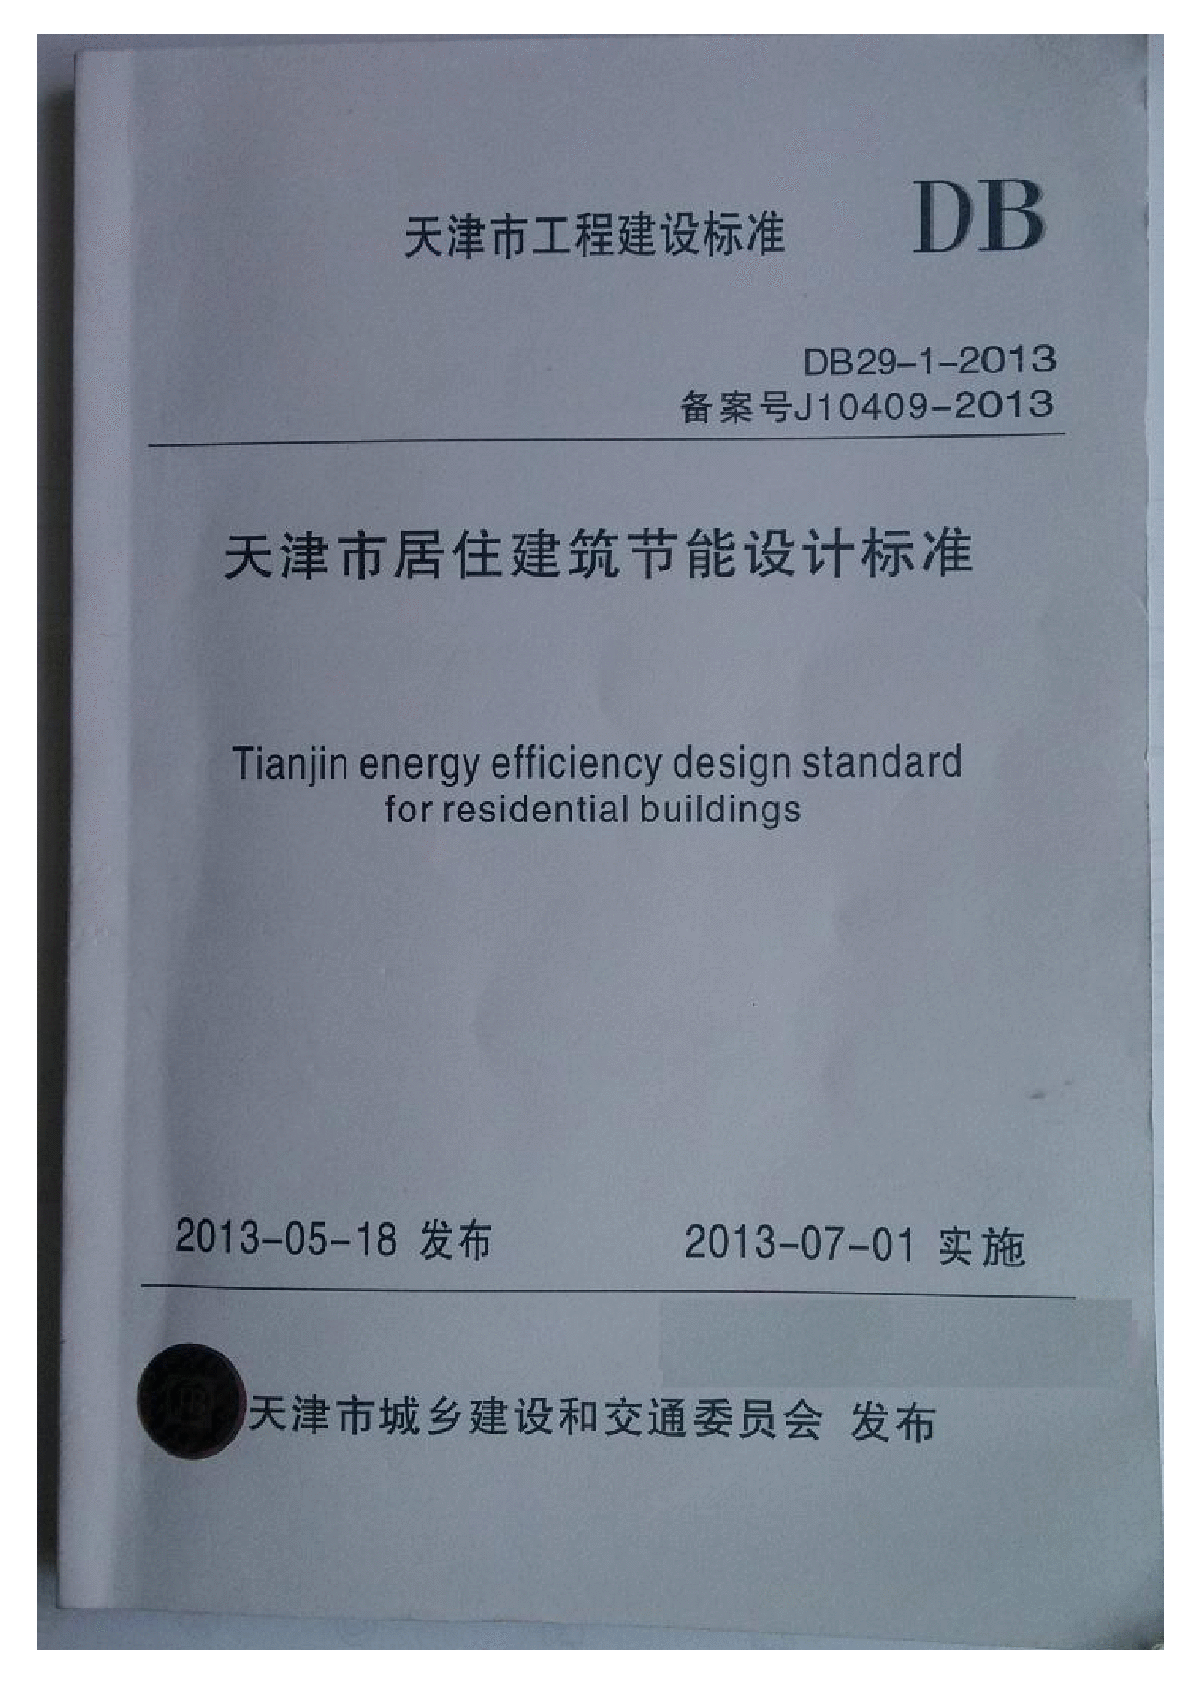 DB29-1-2013天津市居住建筑节能设计标准